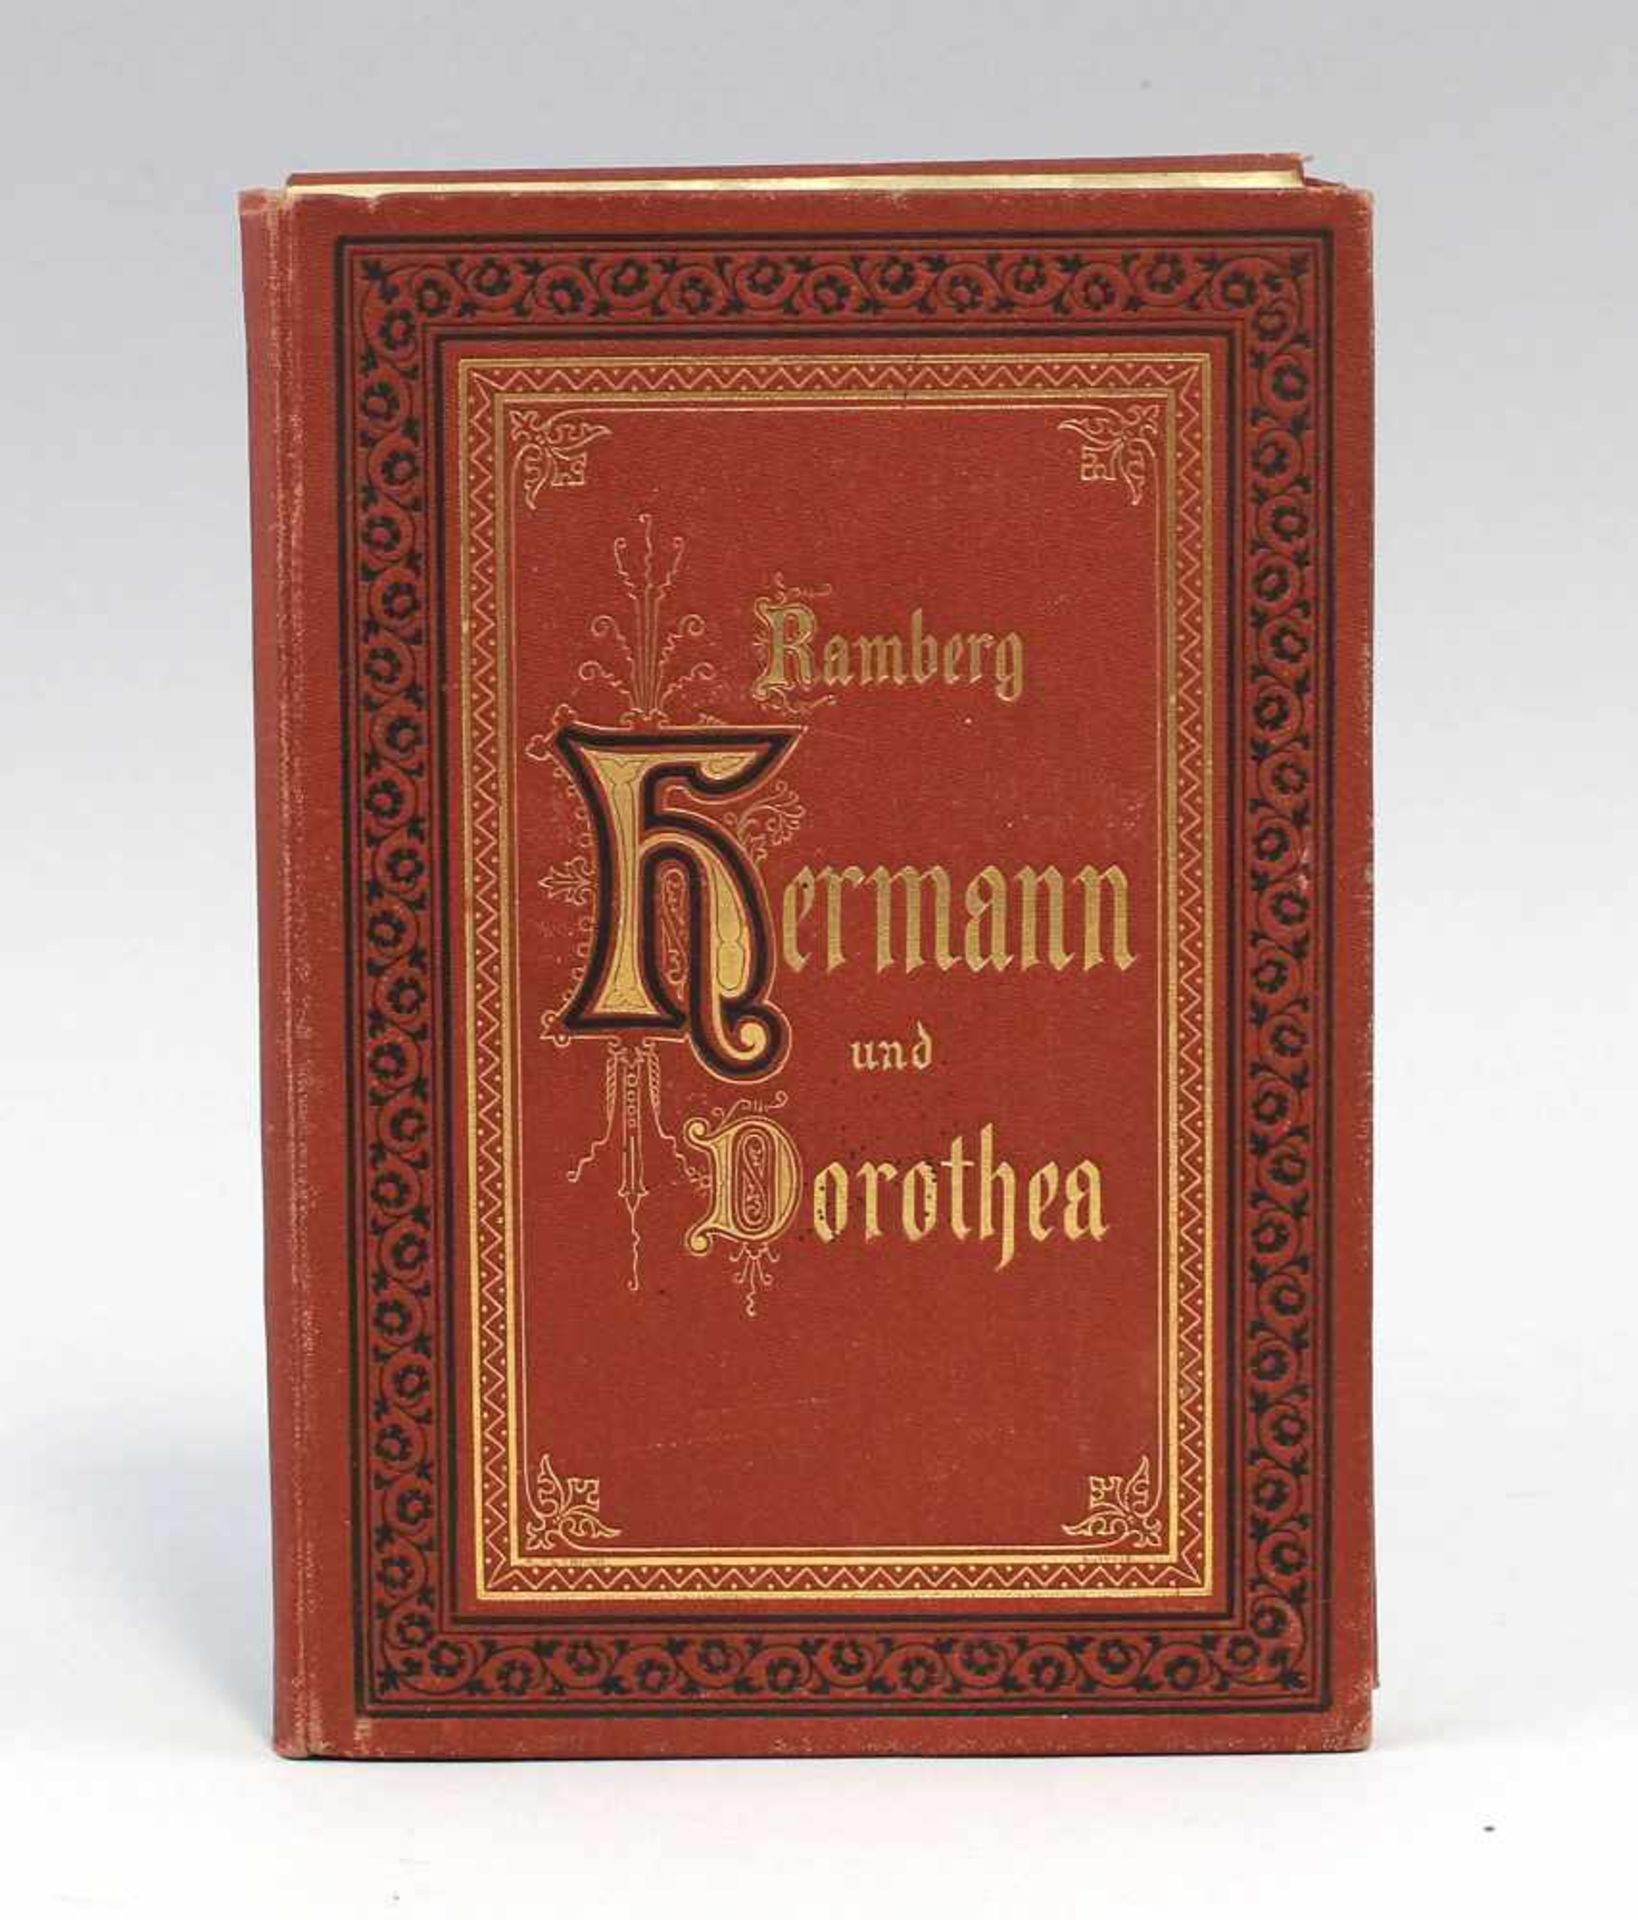 Ramberg, Hermann und Dorothea in 8 Bildern 1876von Arthur Freiherr von Ramberg nach den Original-